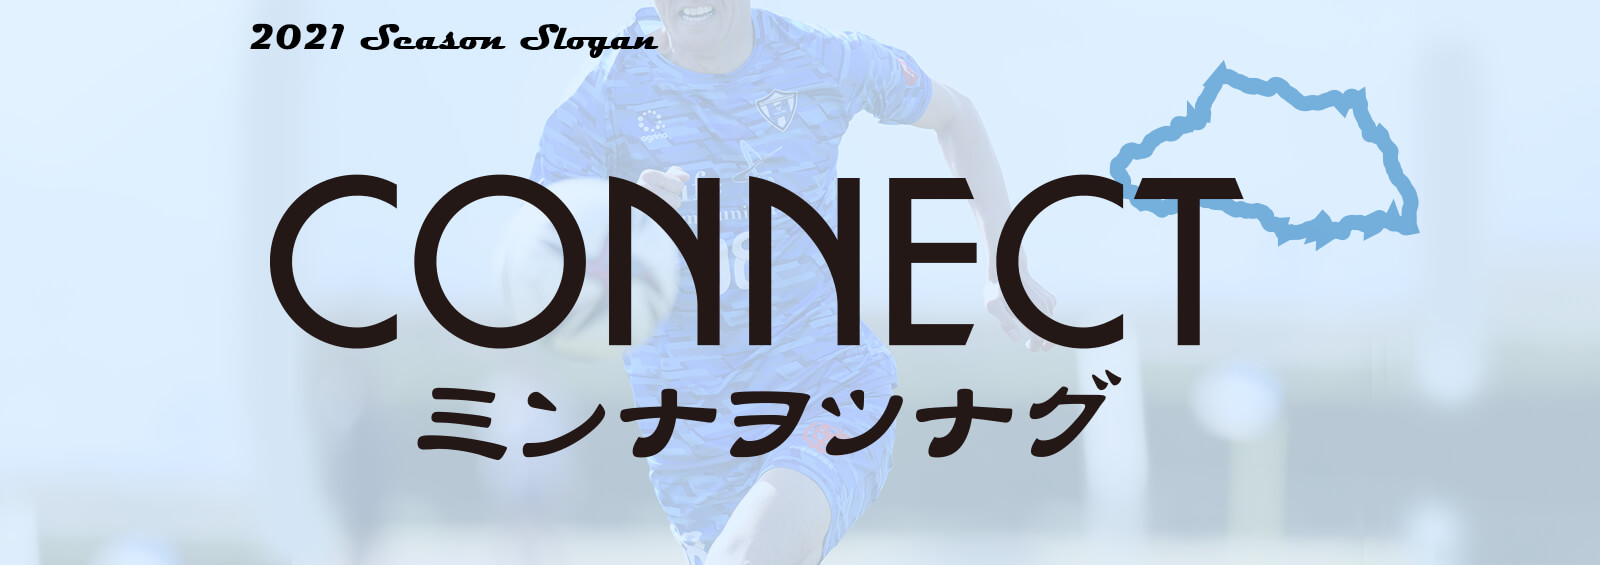 2021 Season Slogan CONNECT ミンナヲツナグ